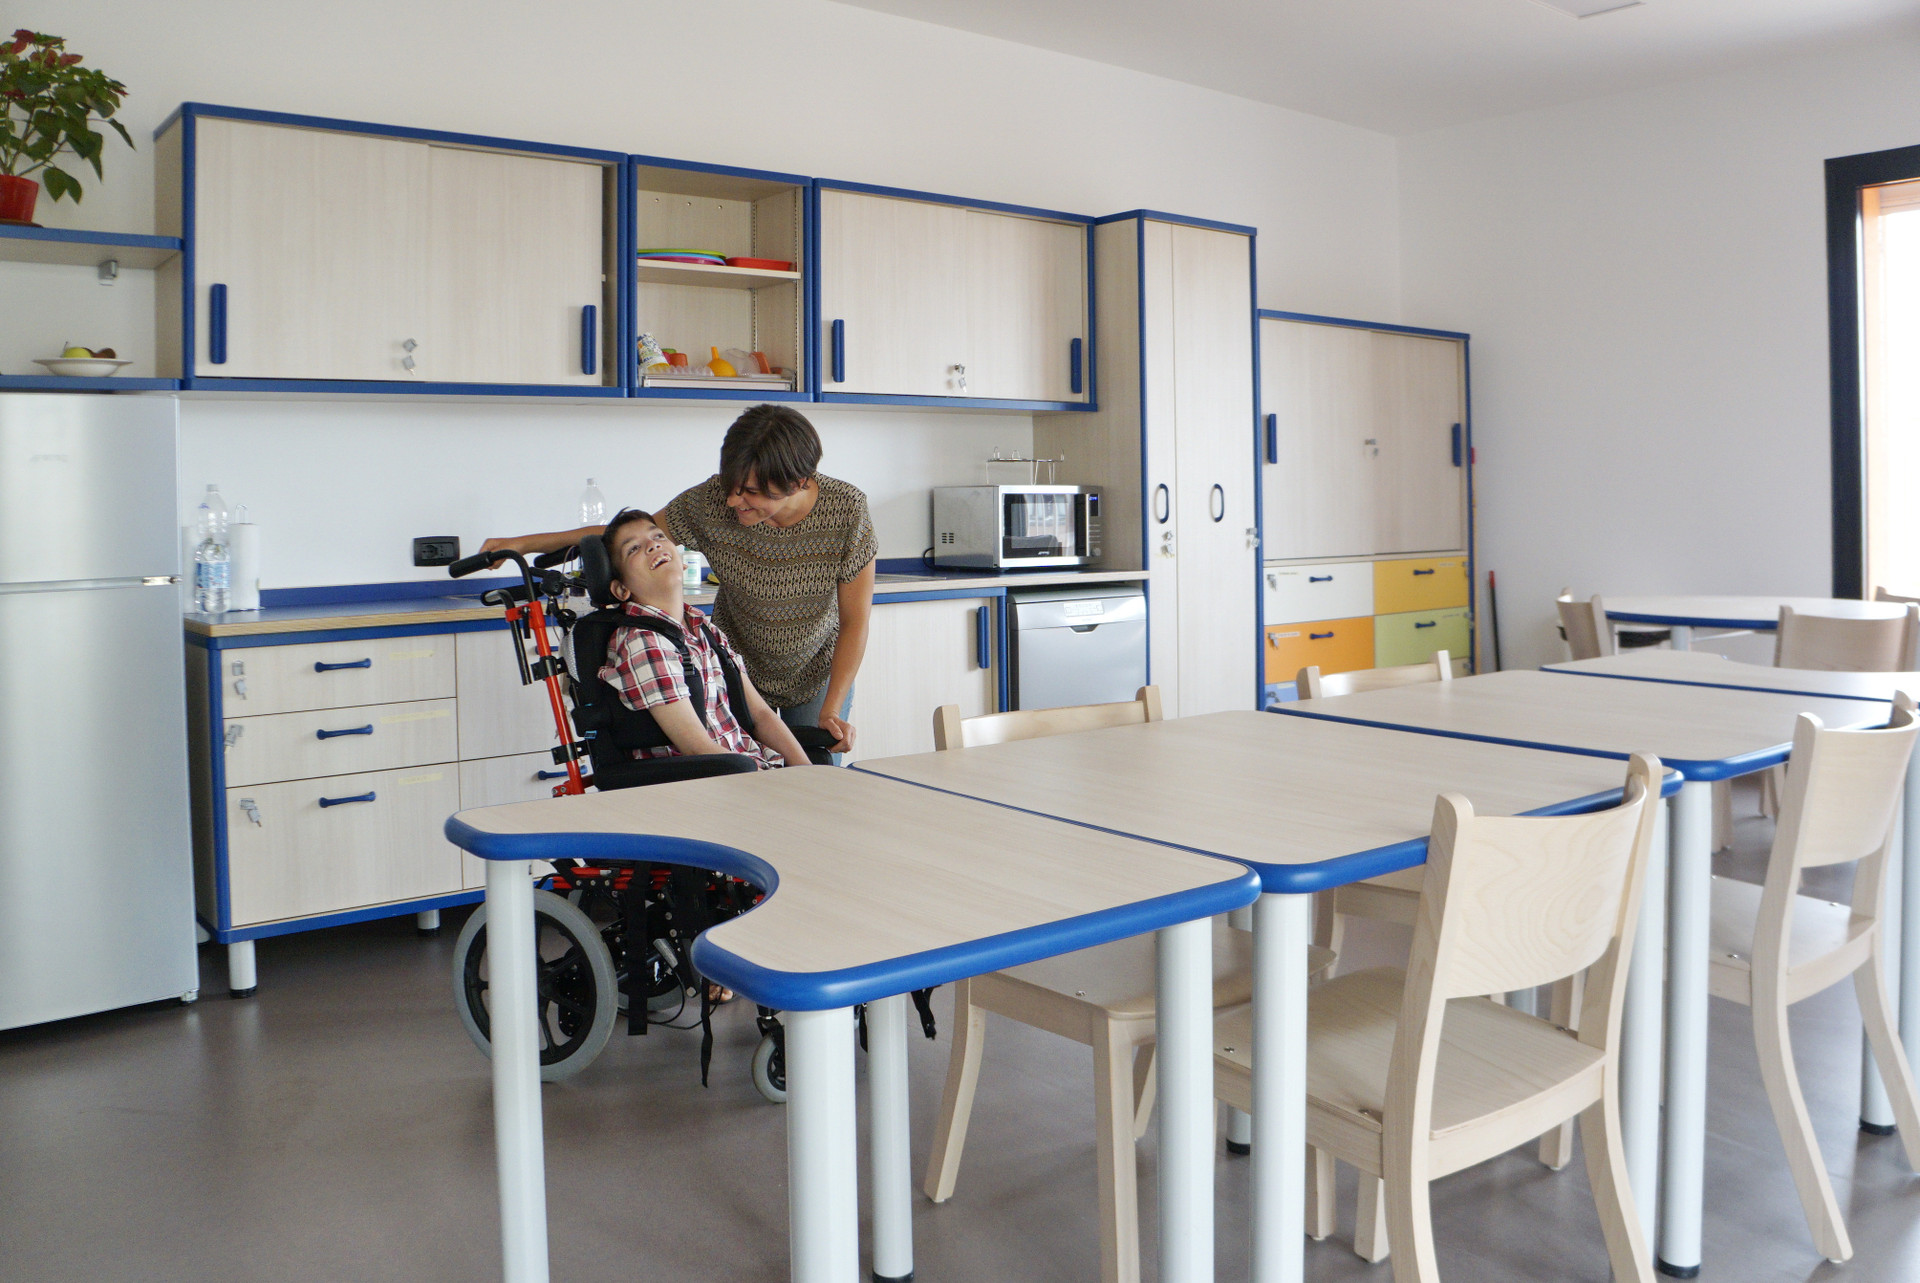 Mirko, ragazzino utente del Centro di Osimo, è nella cucina del suo appartamento insieme alla sua educatrice. L'ambiente è ampio e luminoso, con tavoli accessibili e una parete attrezzata di tutti gli elettrodomestici